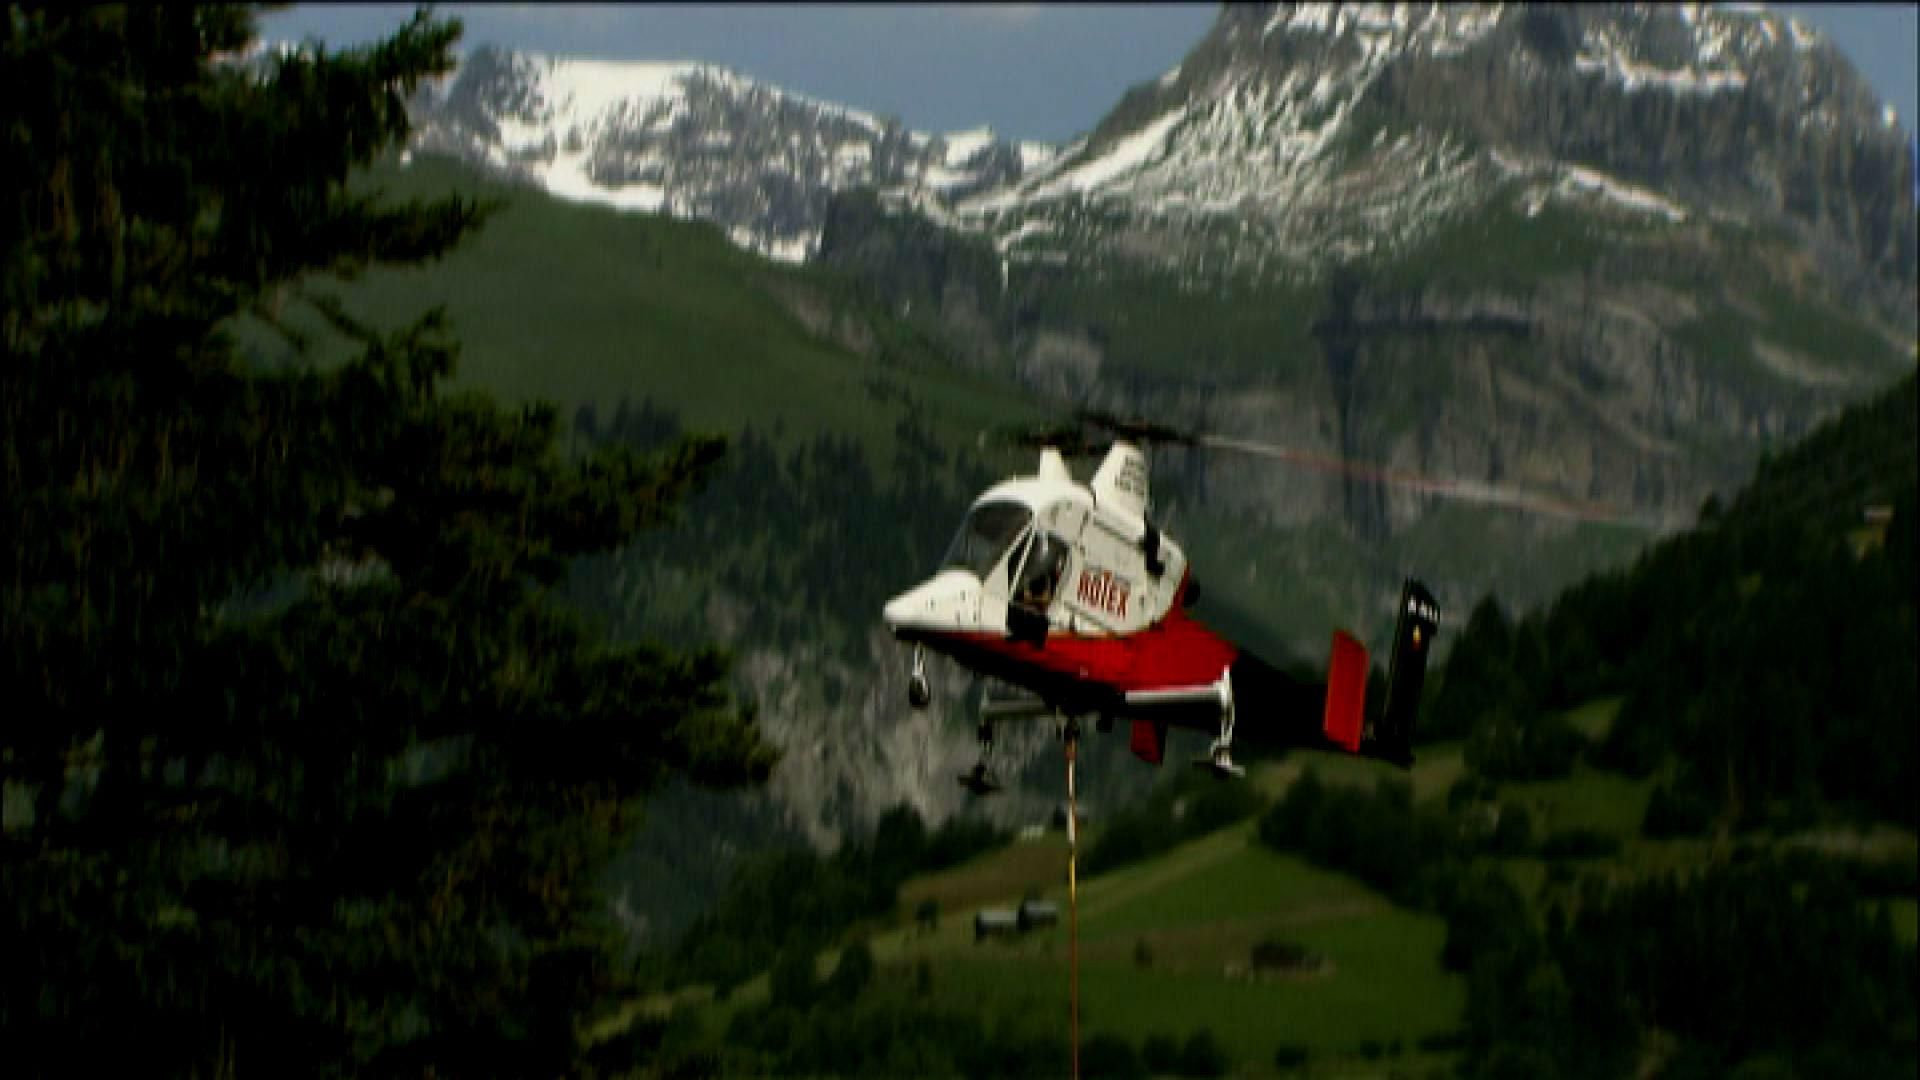 Єдиний гелікоптер у світі з двома перехресними тяговими гвинтами